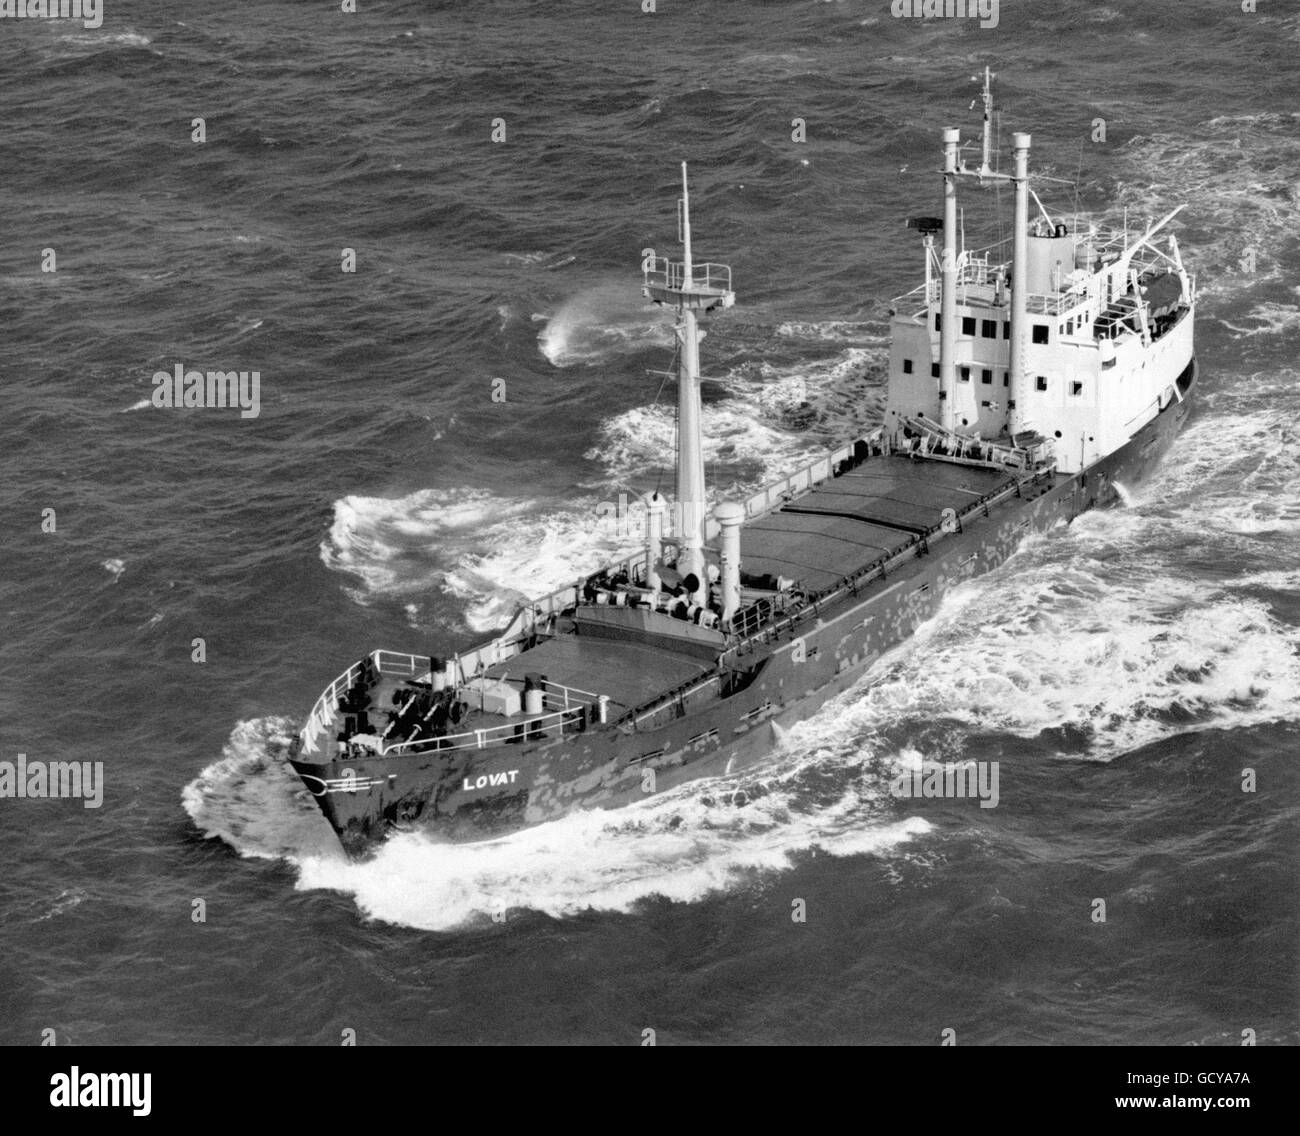 Das britische Frachtschiff MV Lovat, das vor dem Ende von Land, Cornwall, in Stürmen versank. Elf Besatzungsmänner gingen verloren. Stockfoto